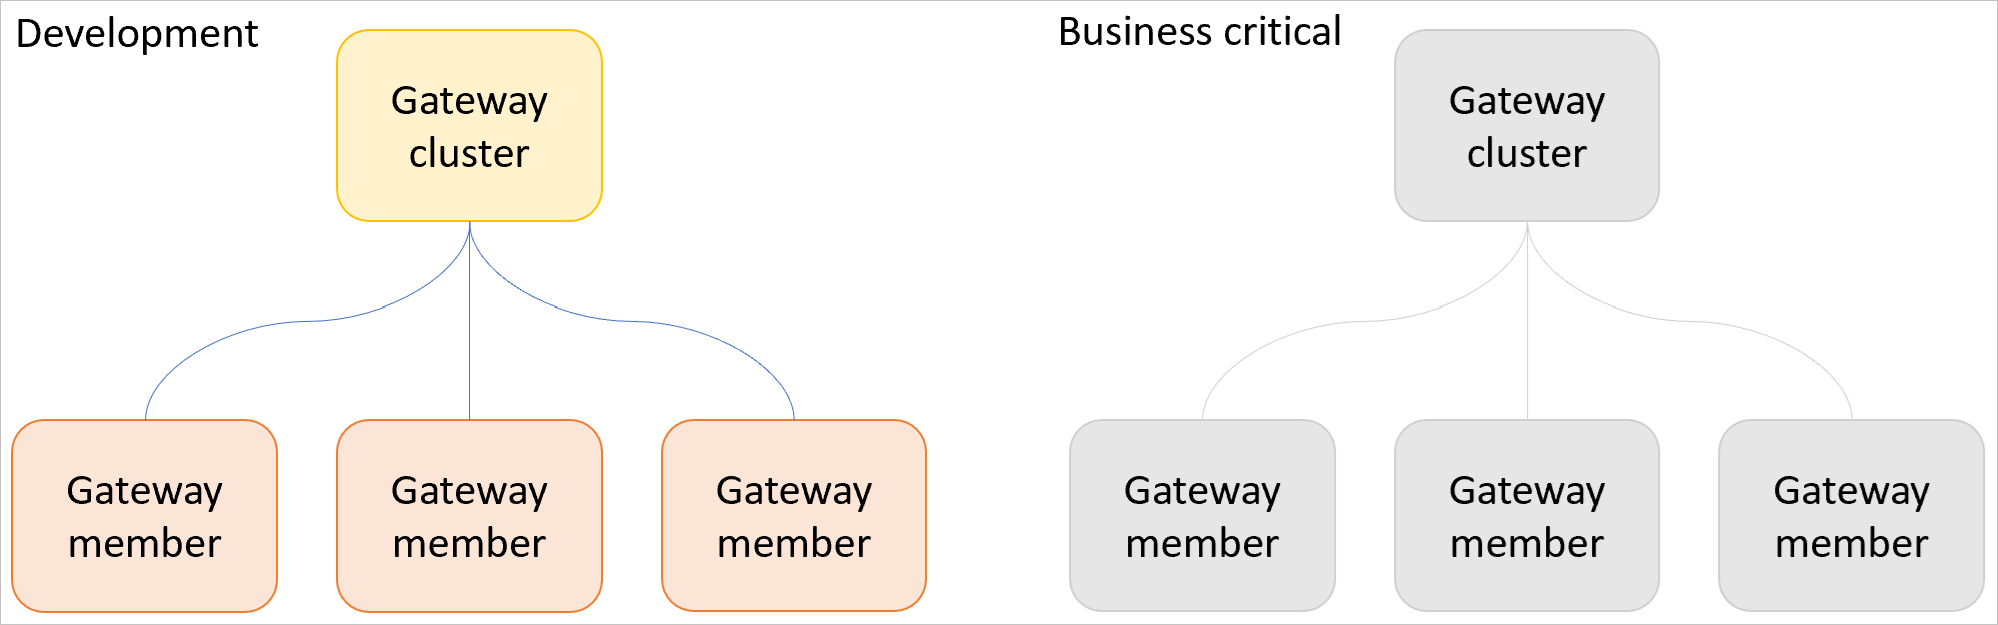 Bild eines Gatewayclusters für Entwicklung und Test mit drei Gateways und eines separaten Produktionsclusters mit drei Gateways